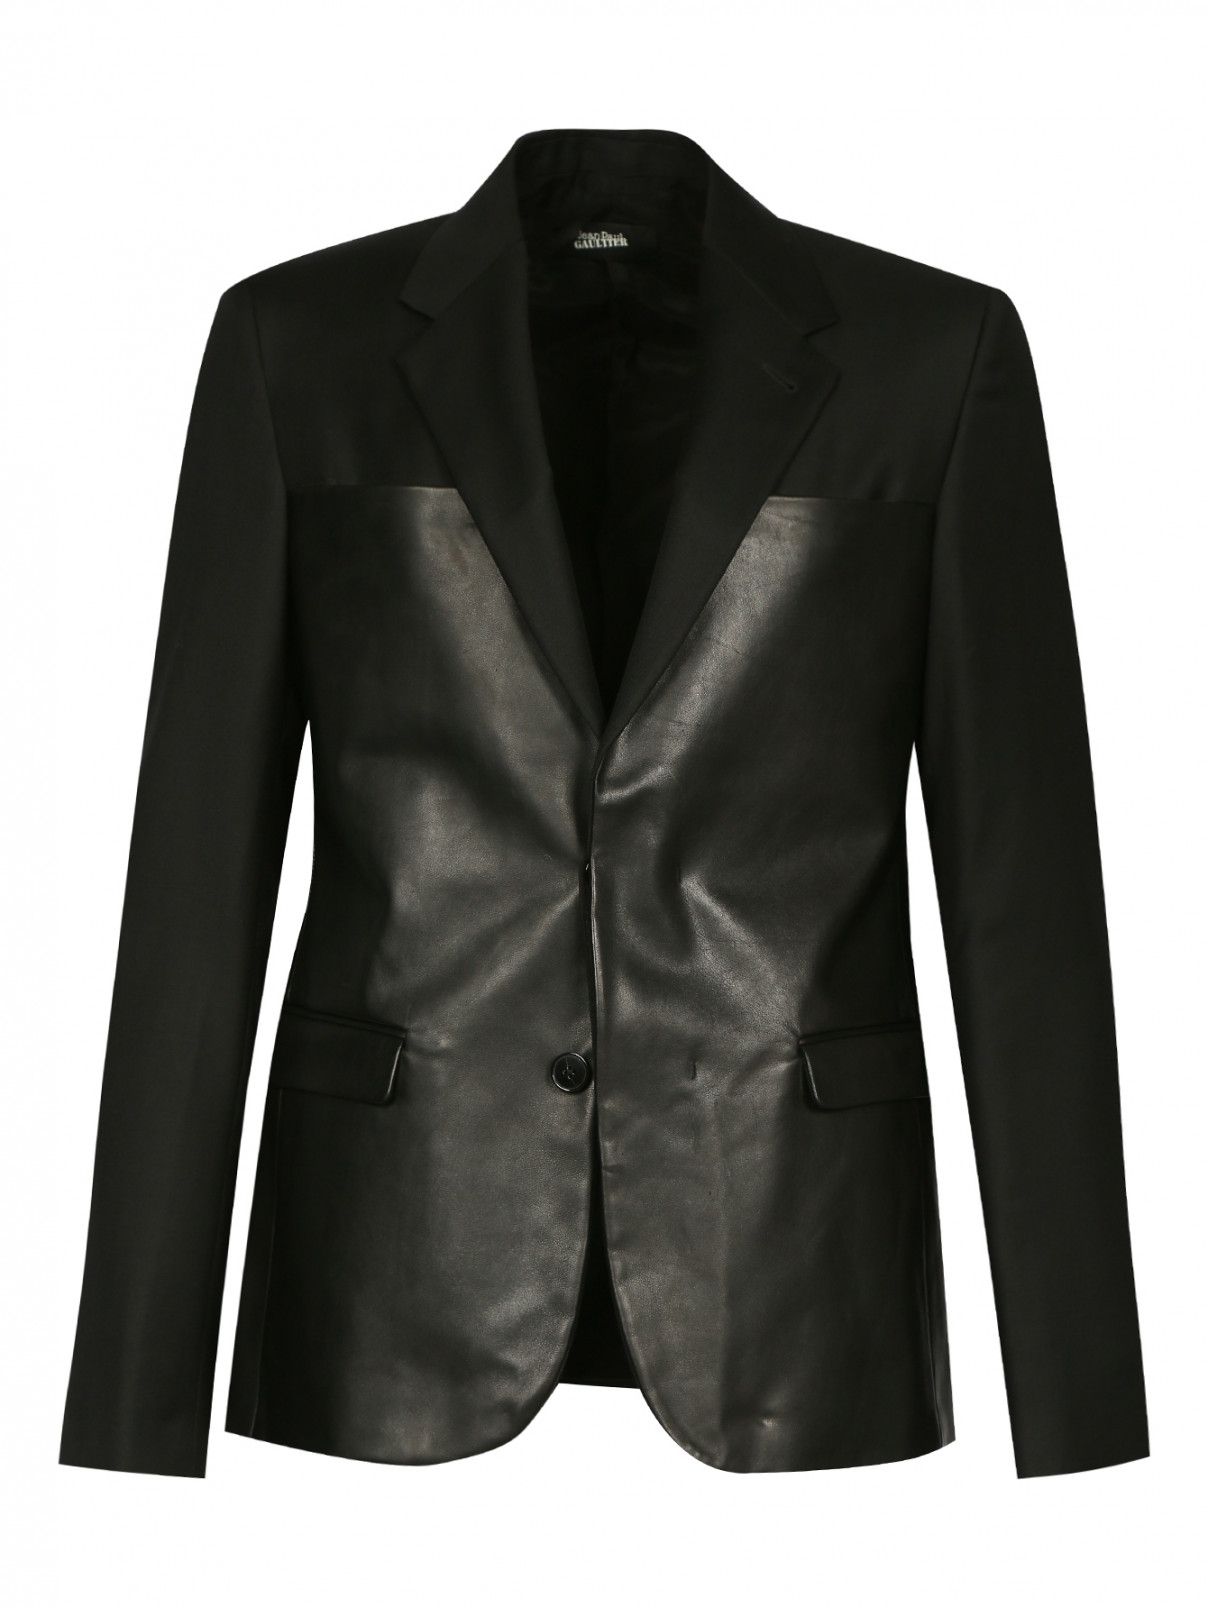 Пиджак из шерсти с кожаными вставками Jean Paul Gaultier  –  Общий вид  – Цвет:  Черный